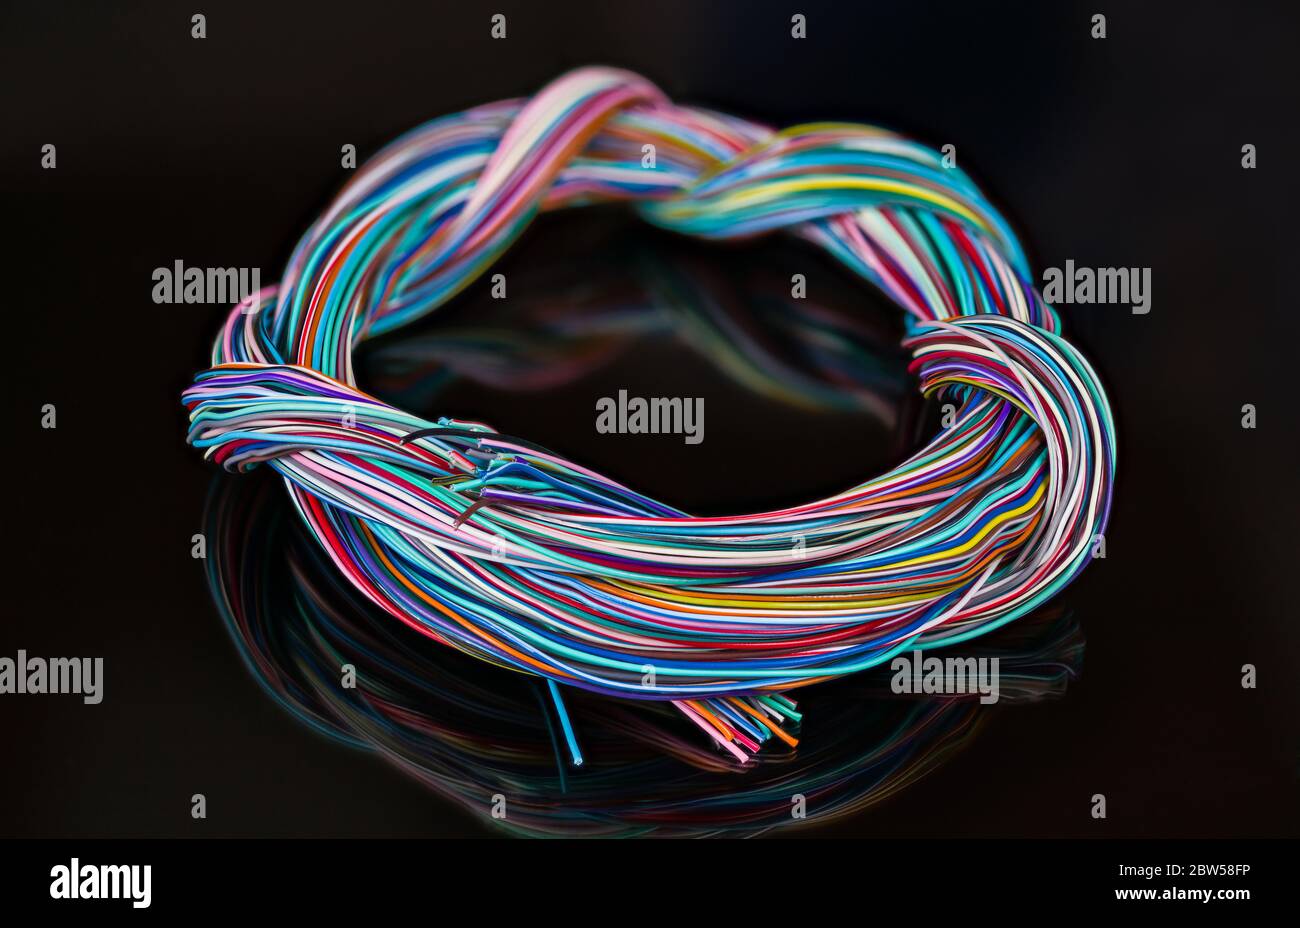 Mazo de cables eléctrico de cables de colores enredados. Cableado multifilar trenzado redondo de conductores de cobre aislados. Reflexión sobre fondo negro Foto de stock